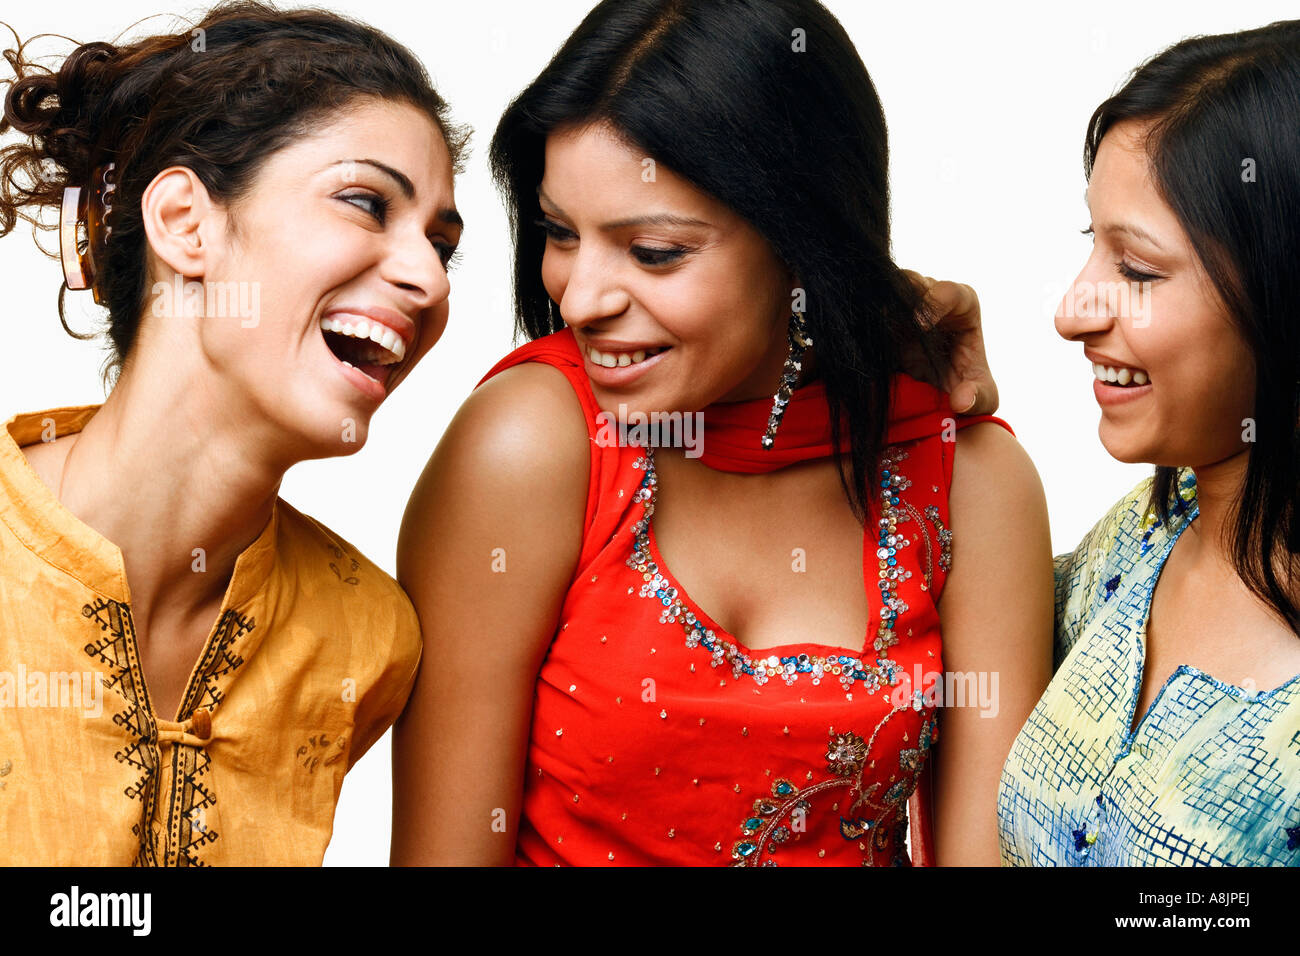 Portrait de trois jeunes femmes et des commérages smiling Banque D'Images